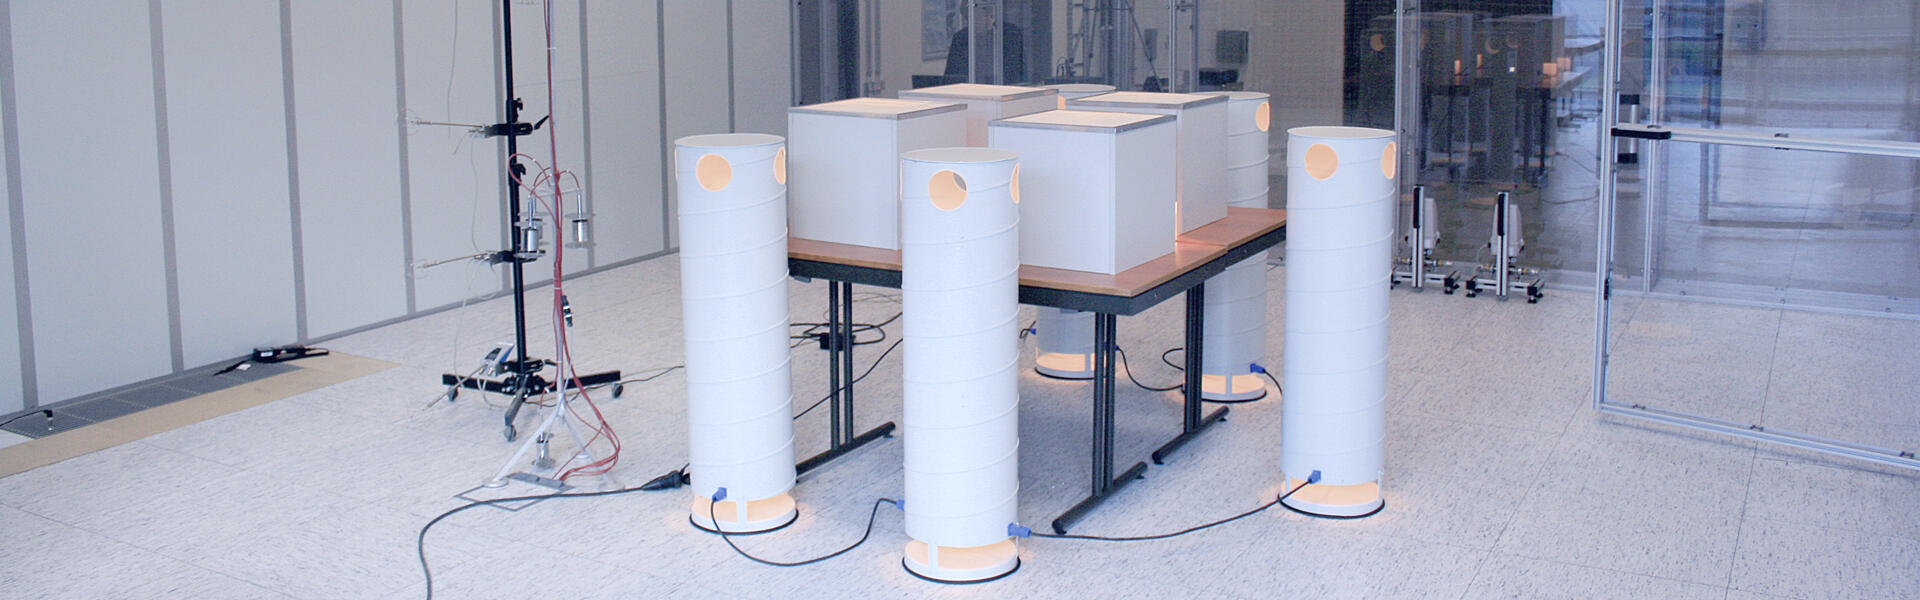 laboratorio-di-filtraggio-dell-aria-interna-in-sintesi